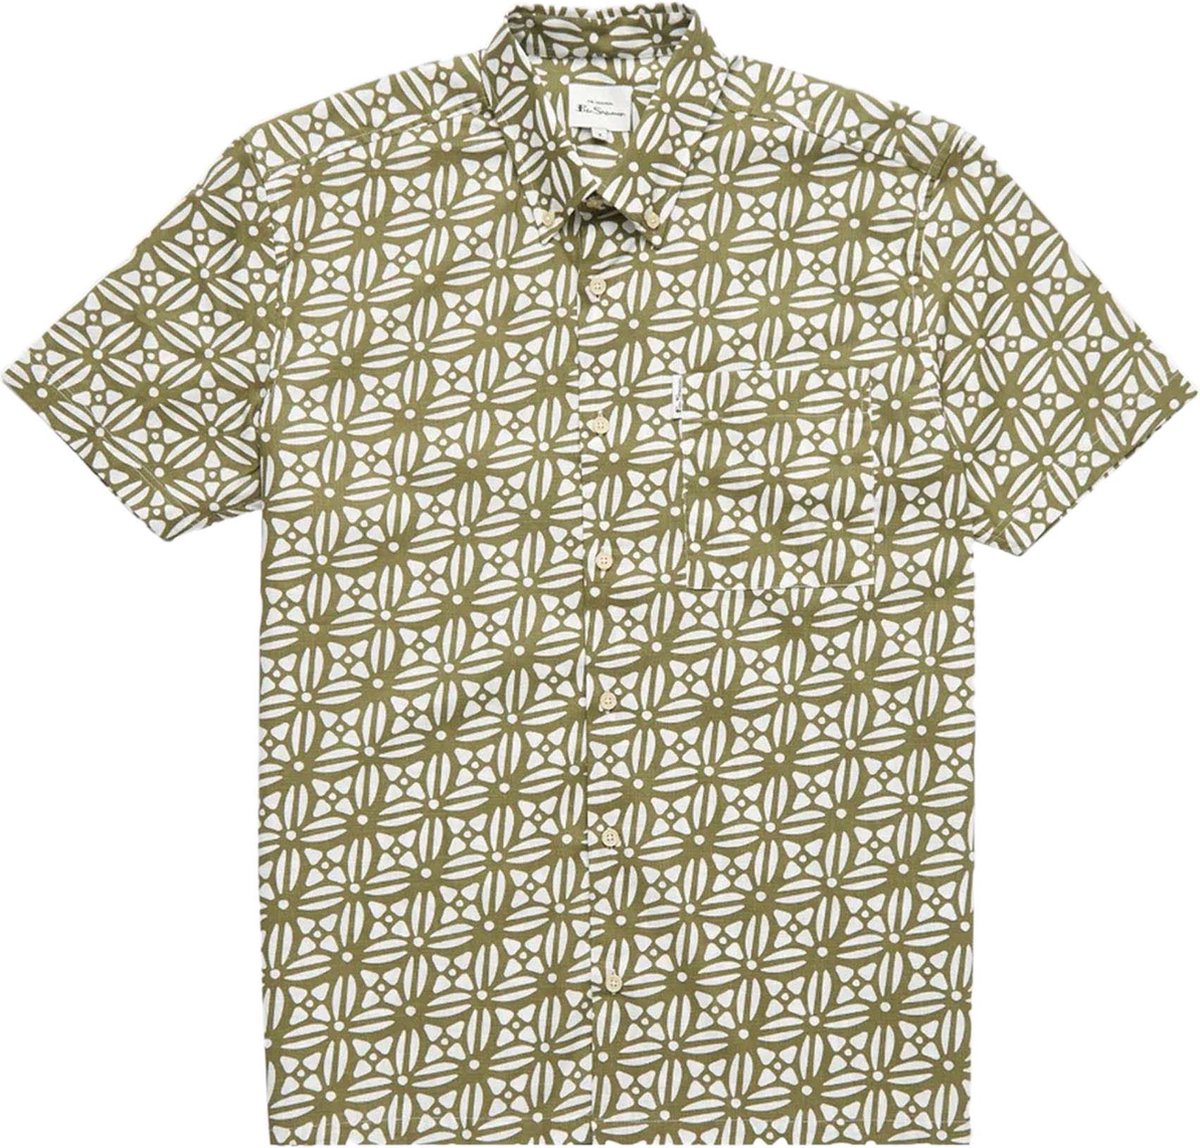 Ben Sherman Overhemd Print Katoen maat S Geo block korte mouw overhemden print